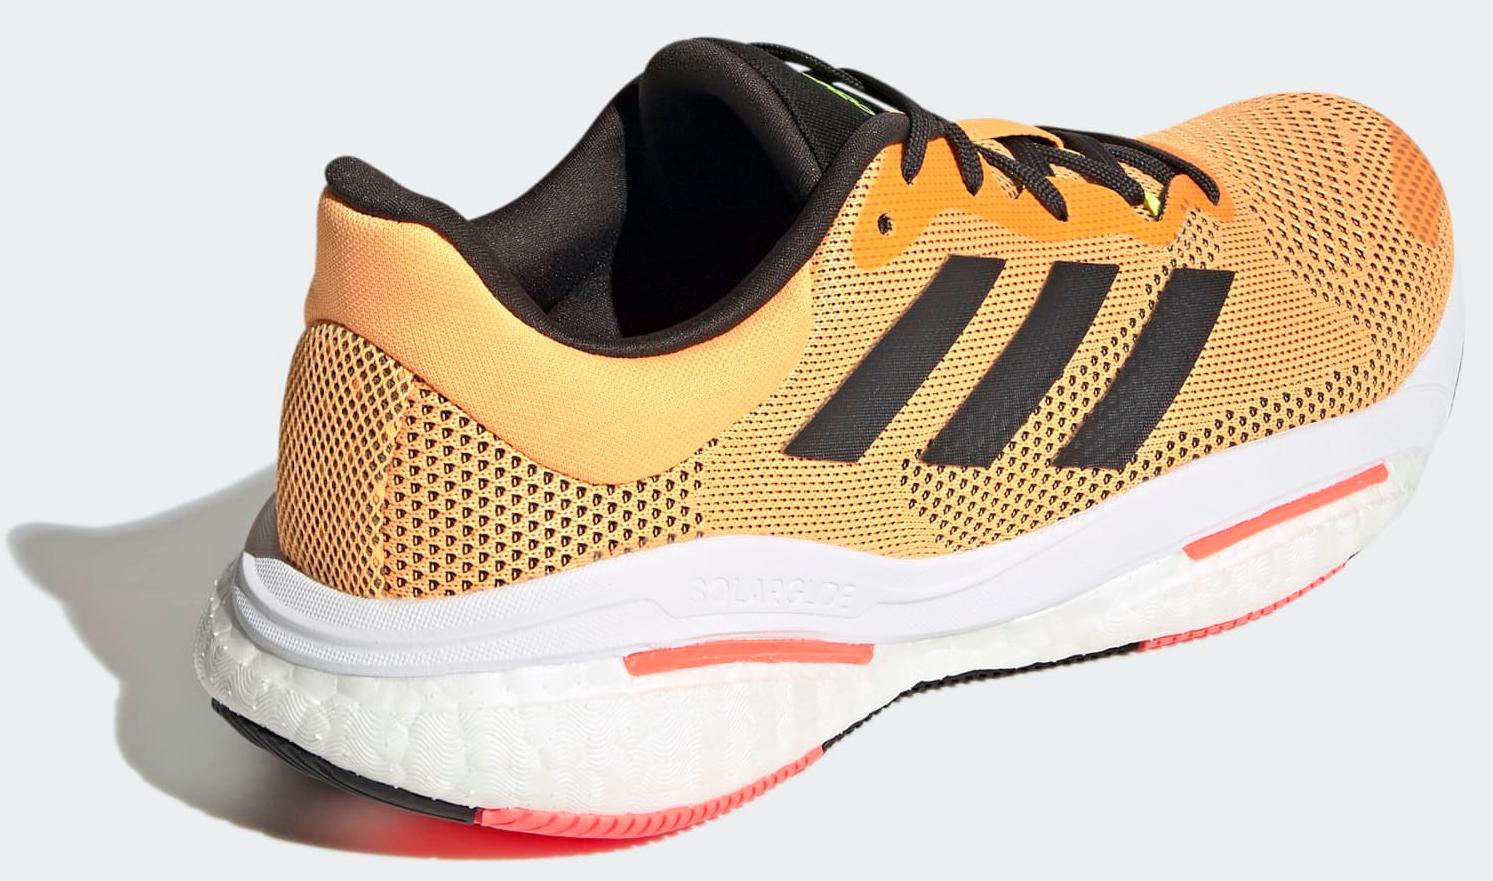 Беговые кроссовки Adidas Solar Glide 5 Flash Orange